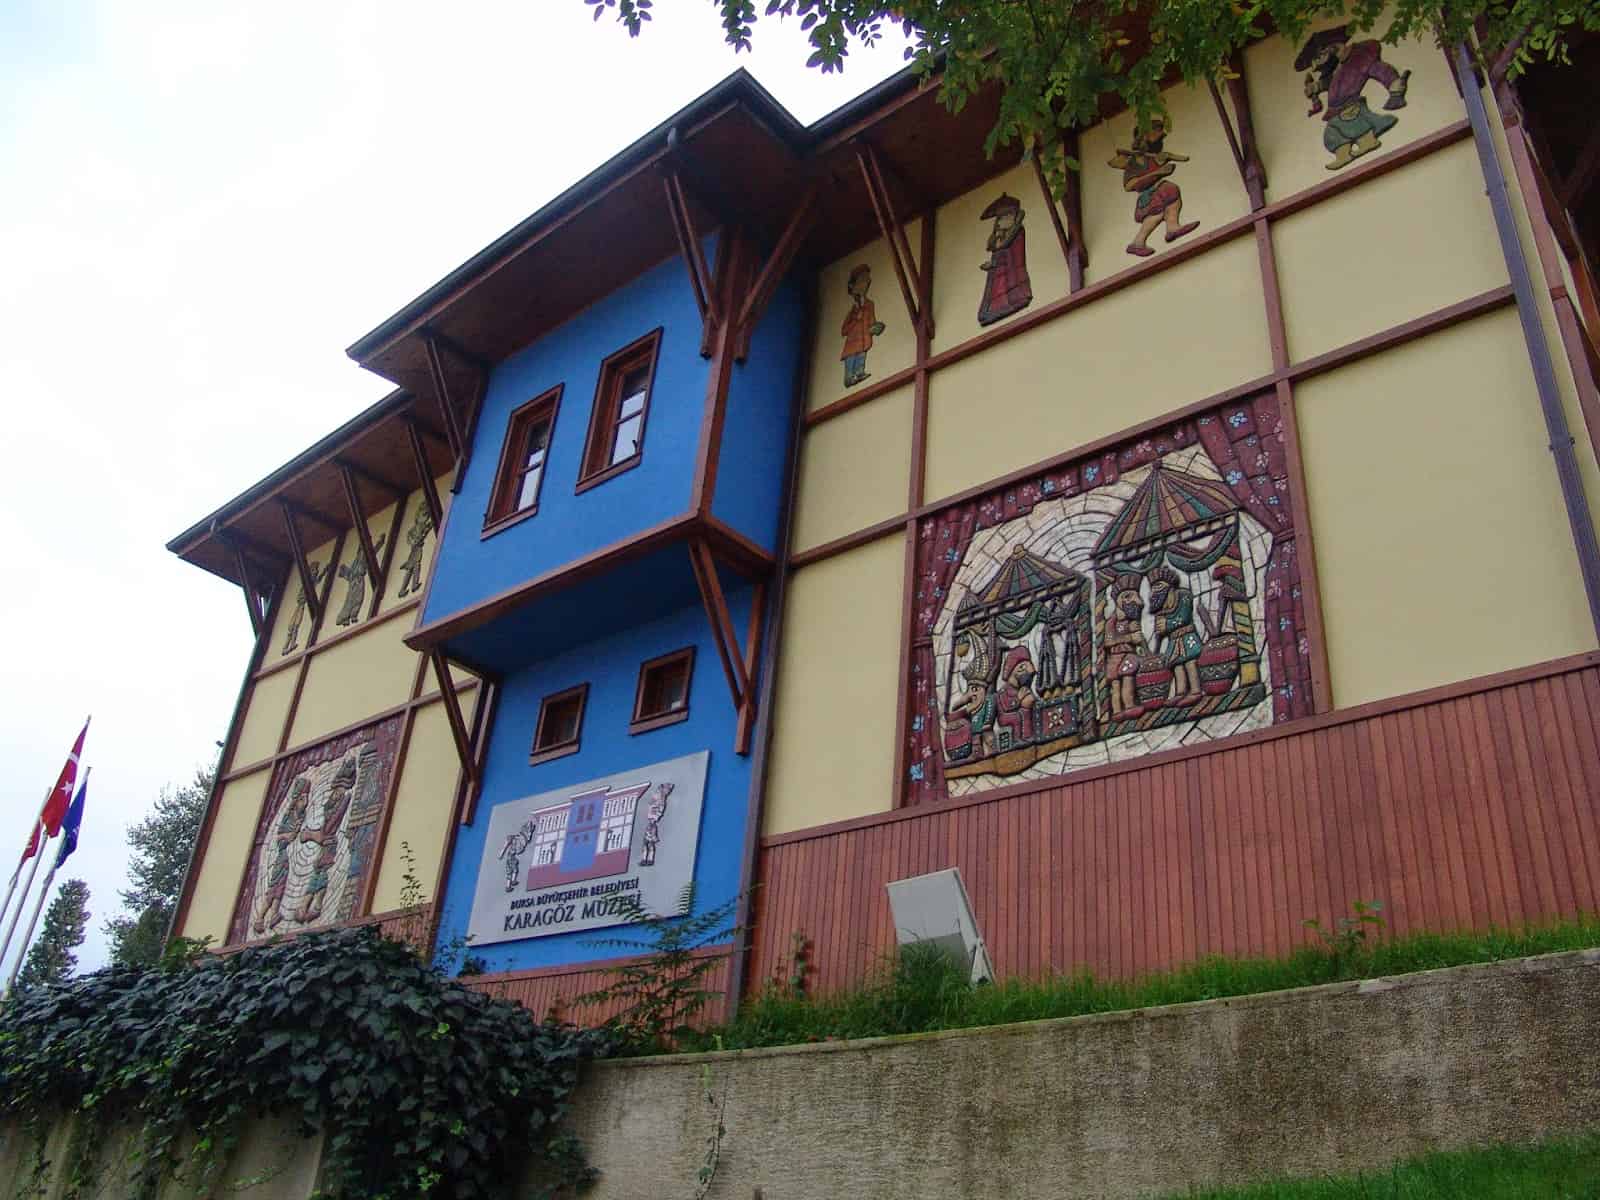 Karagöz Müzesi in Çekirge, Bursa, Turkey